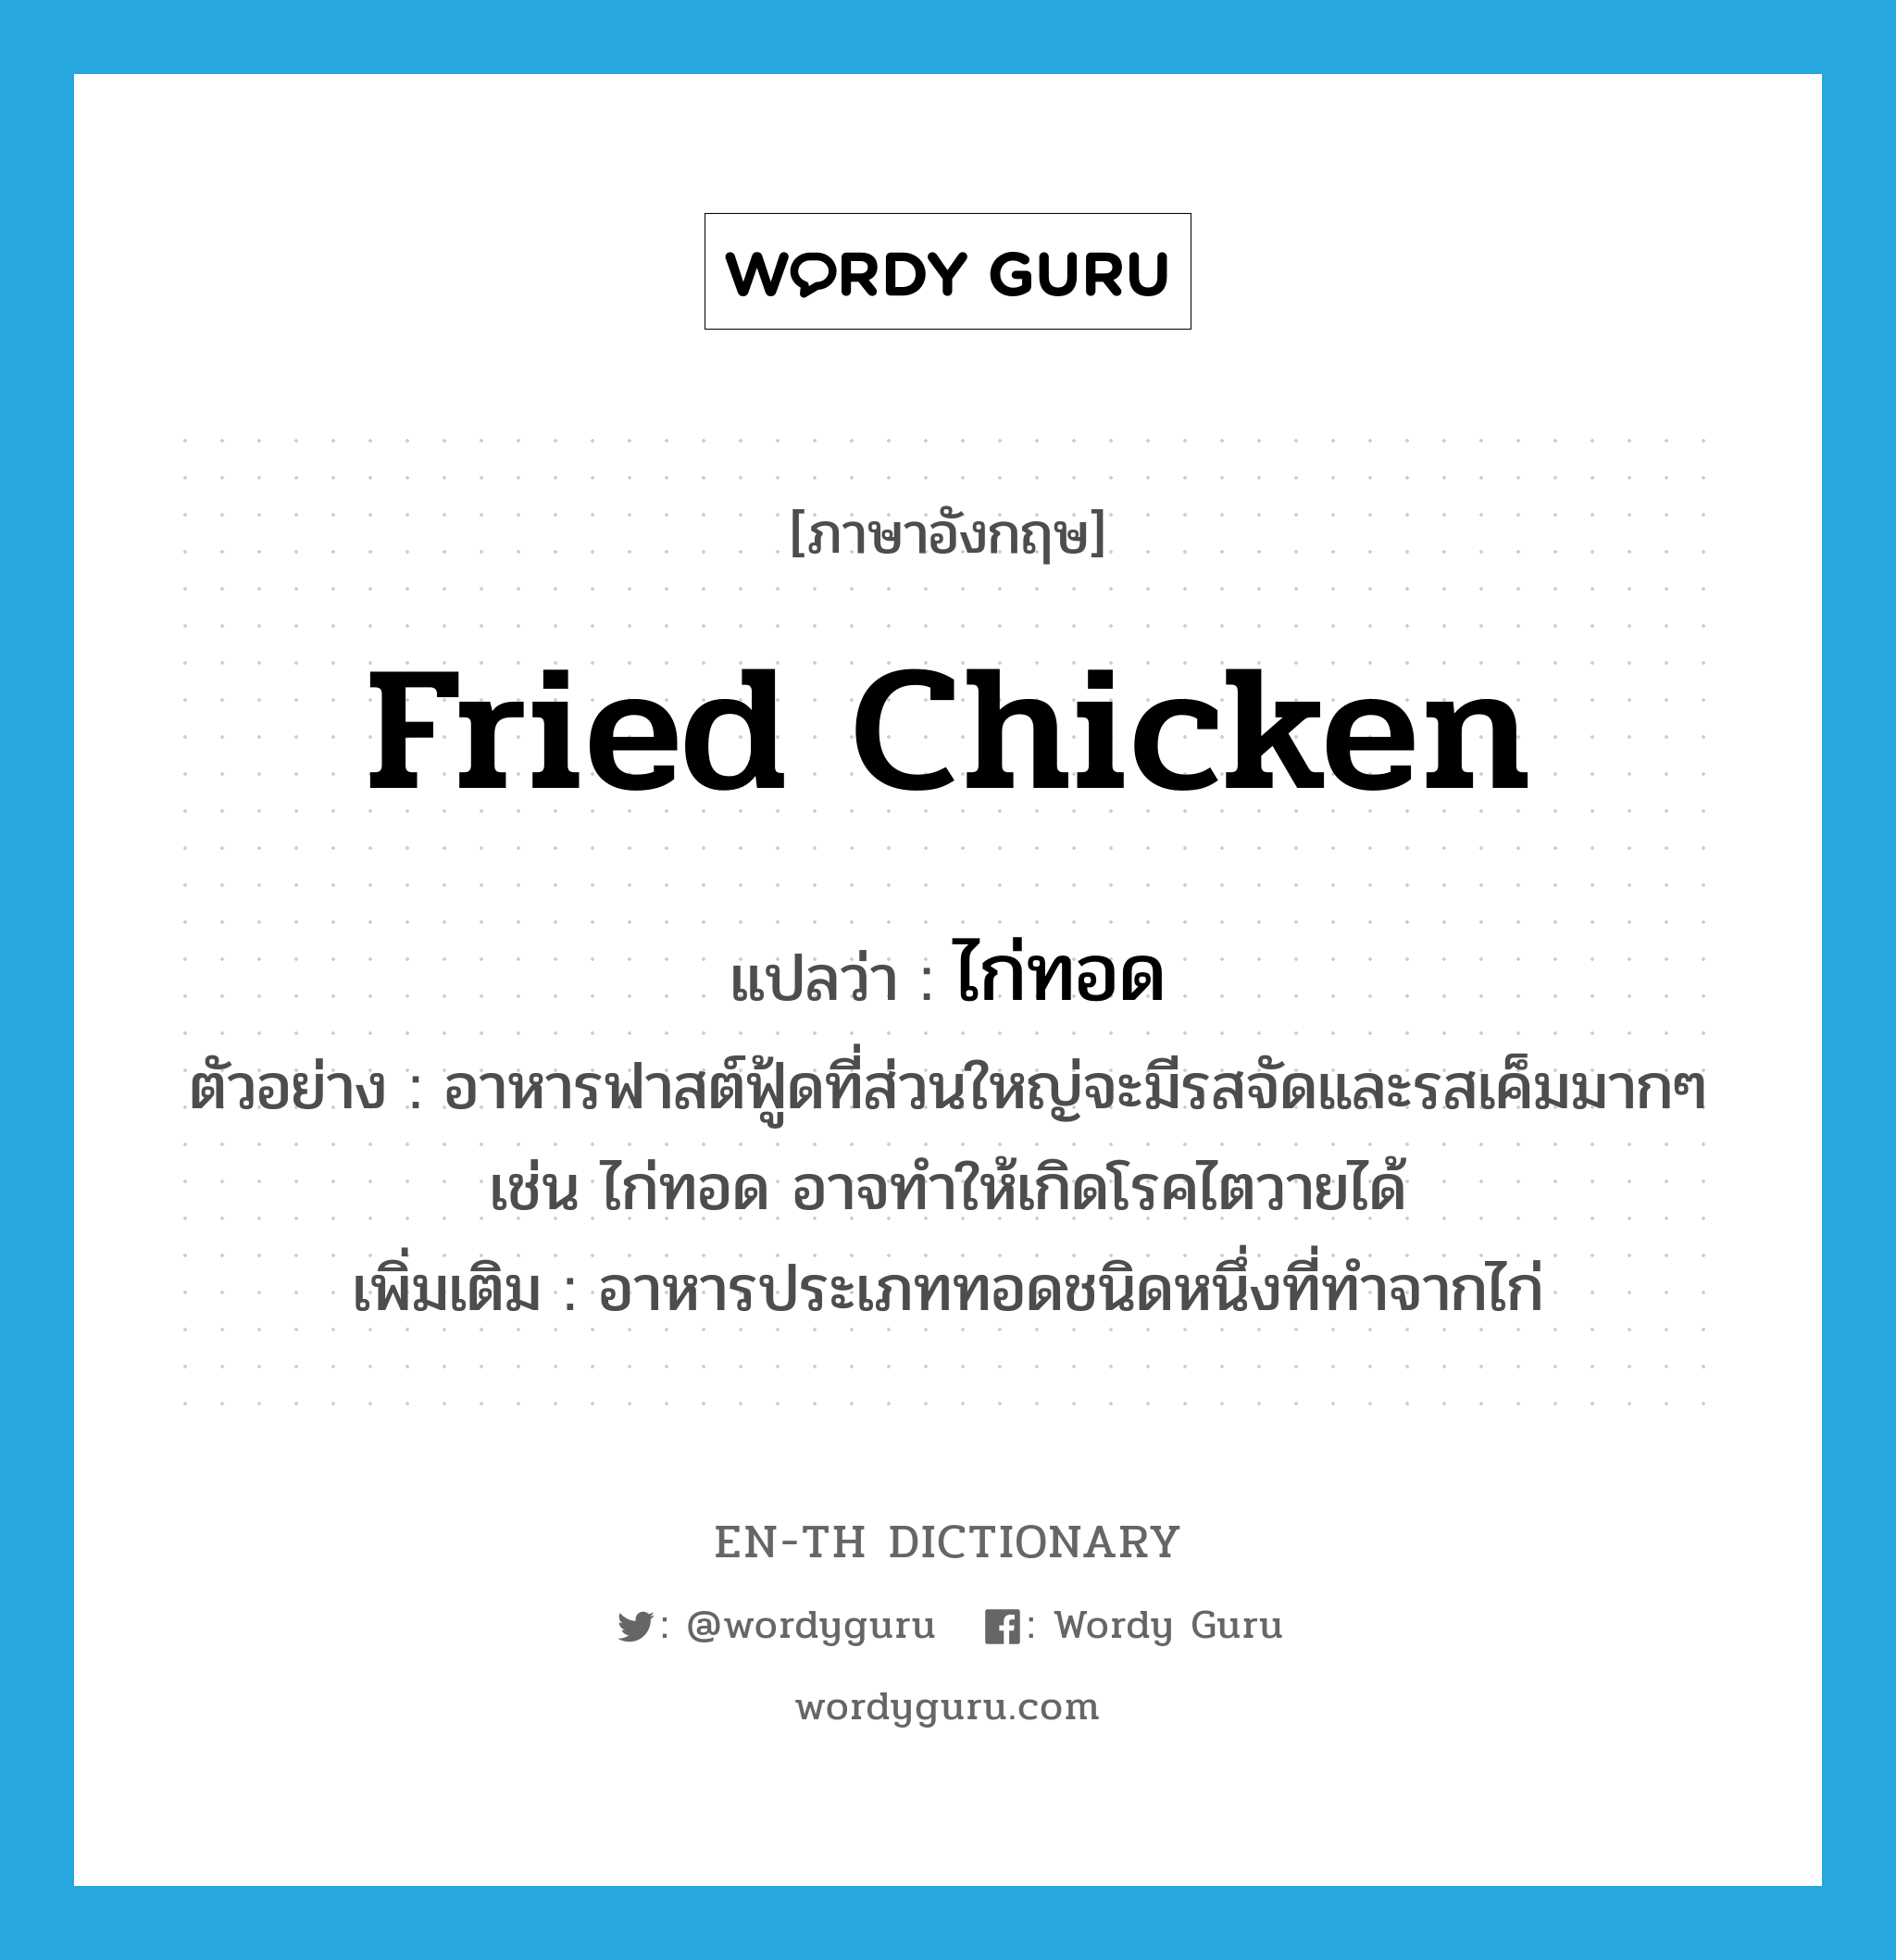 fried chicken แปลว่า?, คำศัพท์ภาษาอังกฤษ fried chicken แปลว่า ไก่ทอด ประเภท N ตัวอย่าง อาหารฟาสต์ฟู้ดที่ส่วนใหญ่จะมีรสจัดและรสเค็มมากๆ เช่น ไก่ทอด อาจทำให้เกิดโรคไตวายได้ เพิ่มเติม อาหารประเภททอดชนิดหนึ่งที่ทำจากไก่ หมวด N